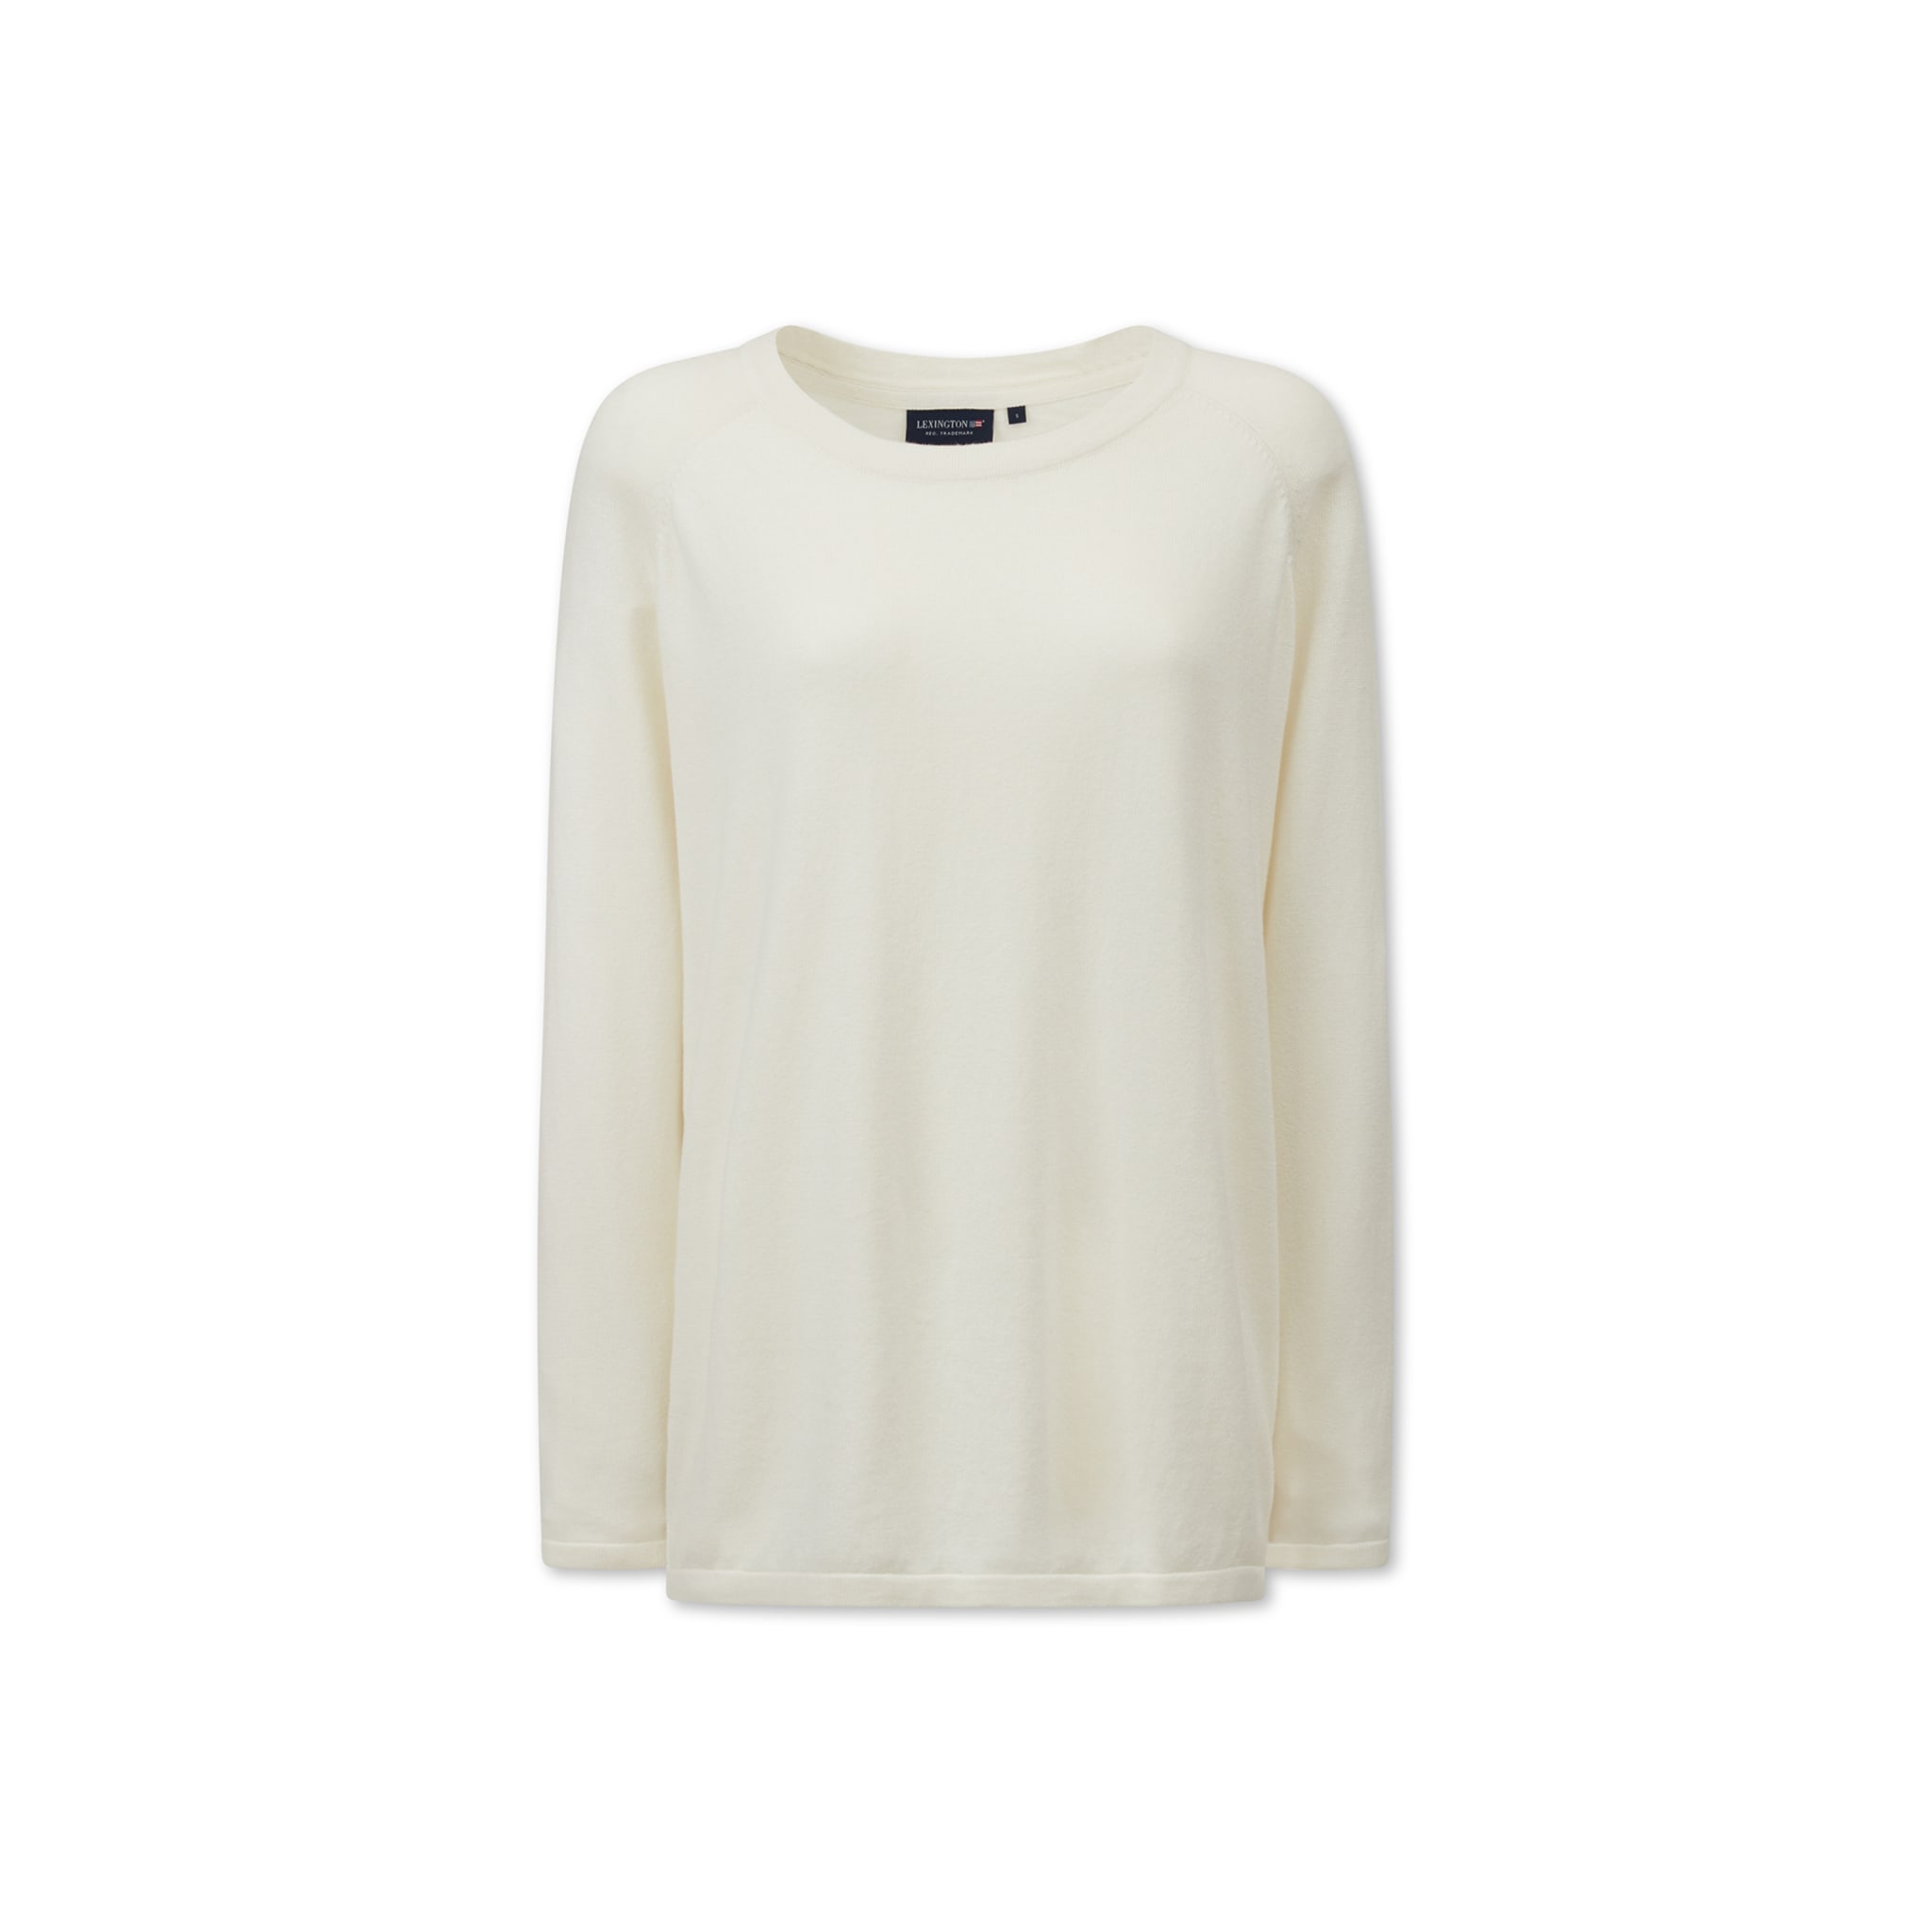 Lea Organic Cotton/cashmere Sweater, offwhite